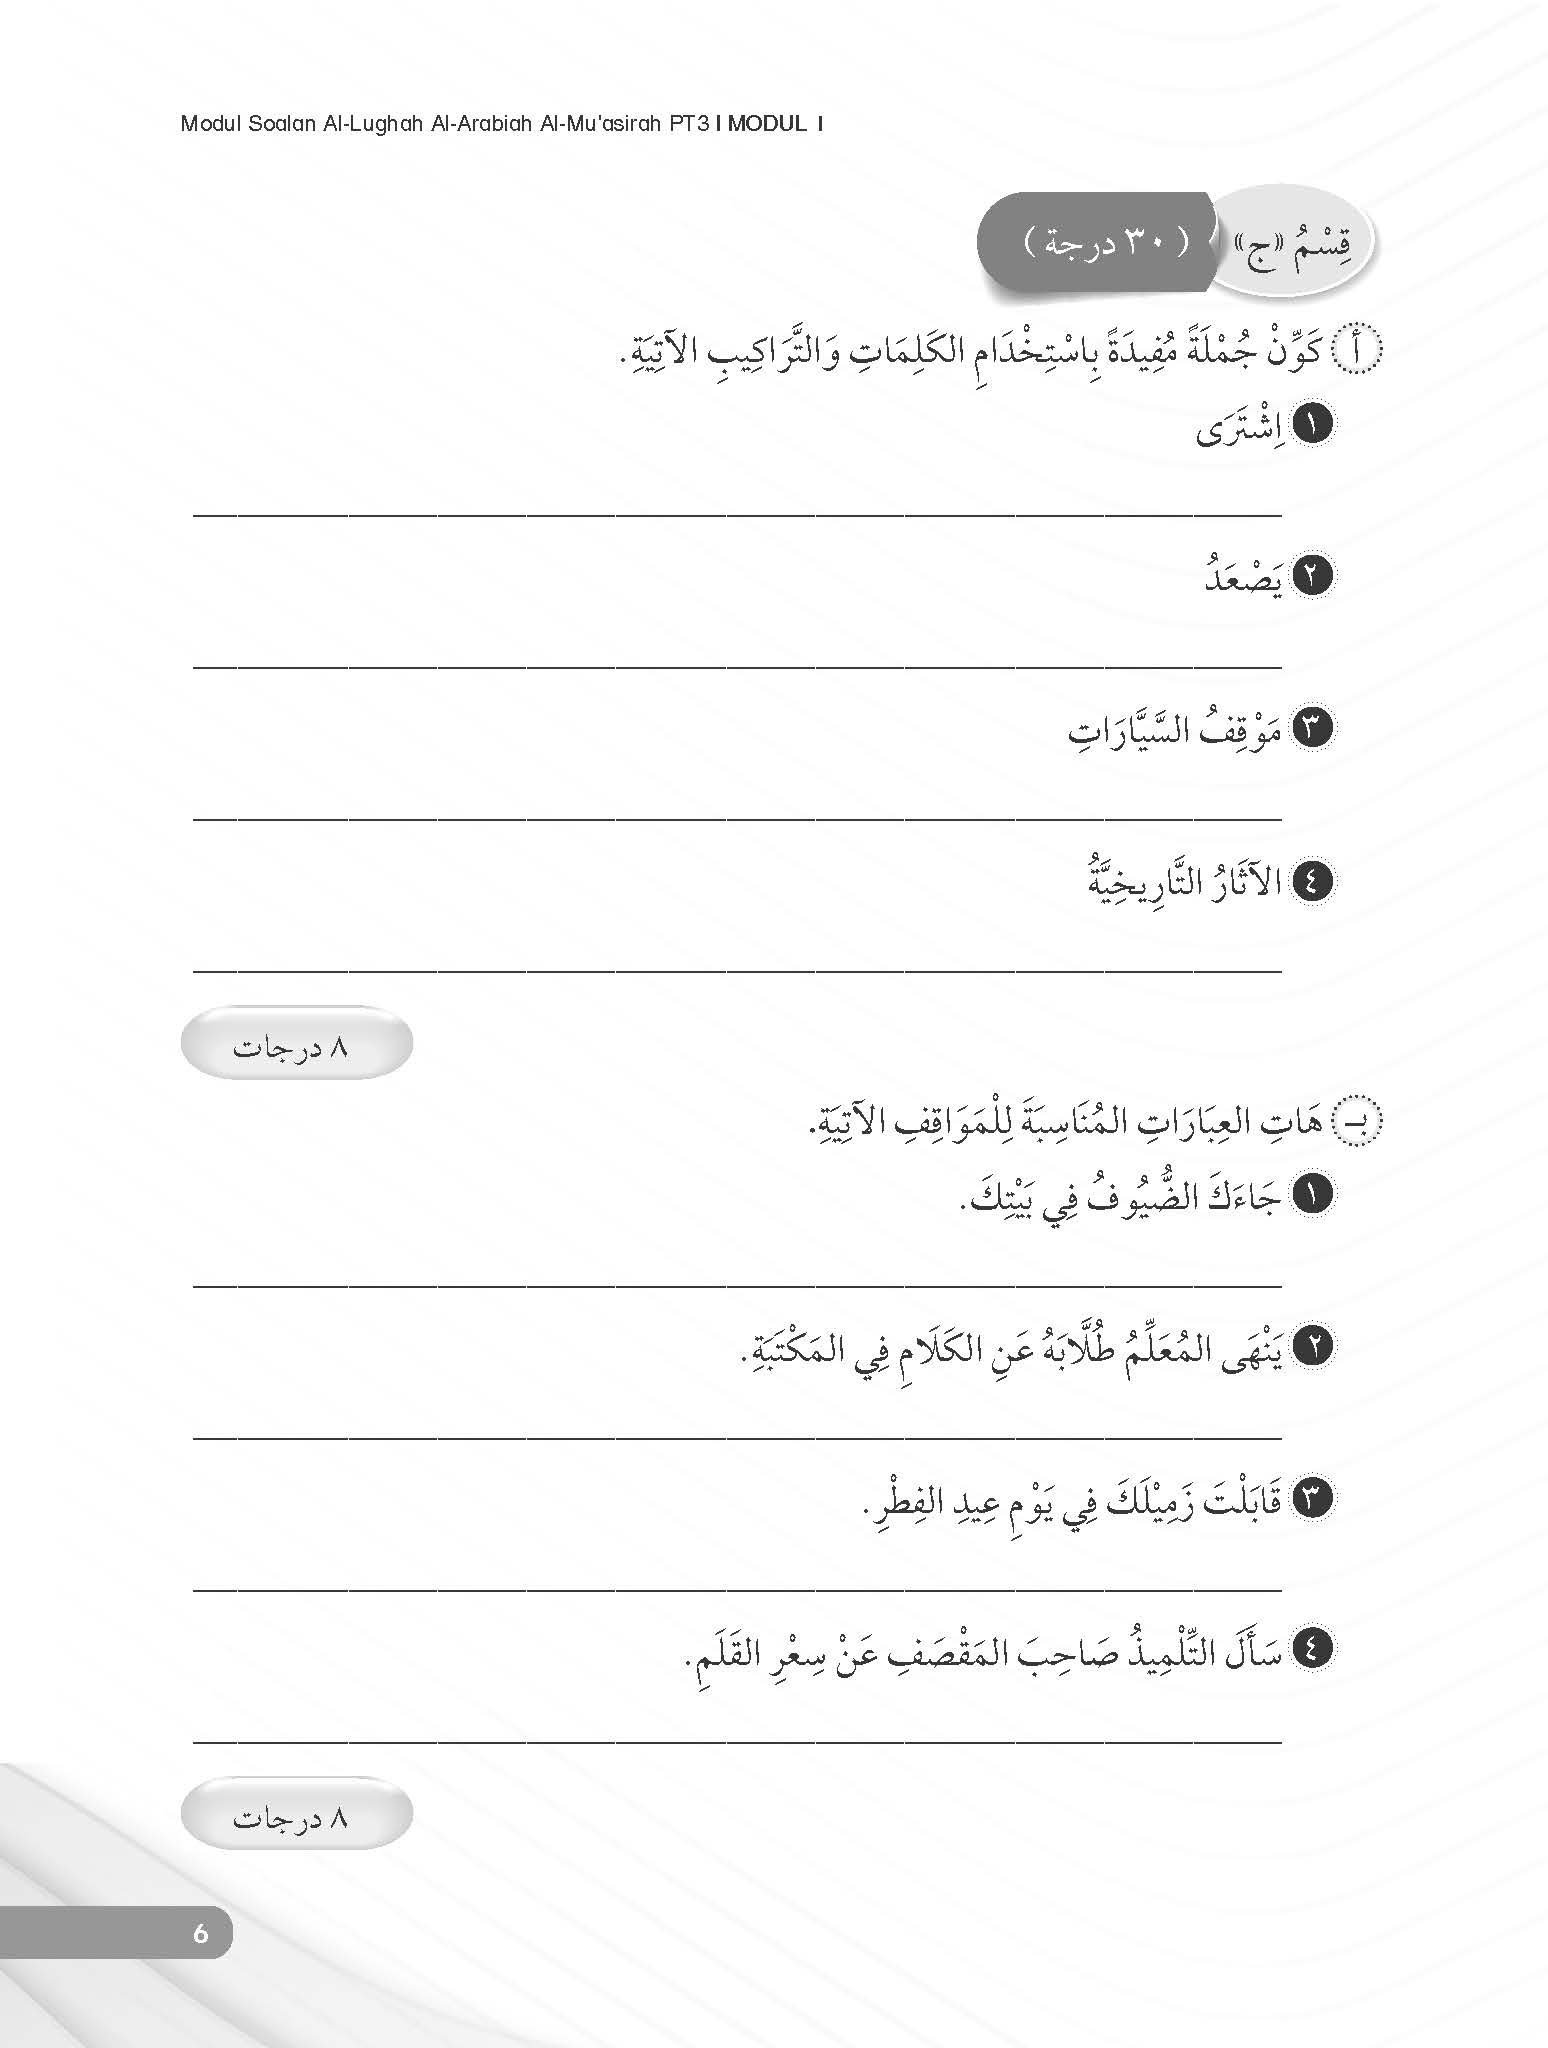 Skor Mumtaz - Modul Soalan Al-Lughah Al-Arabiah Al-Mu’assirah PT3 - (TBBS1176)